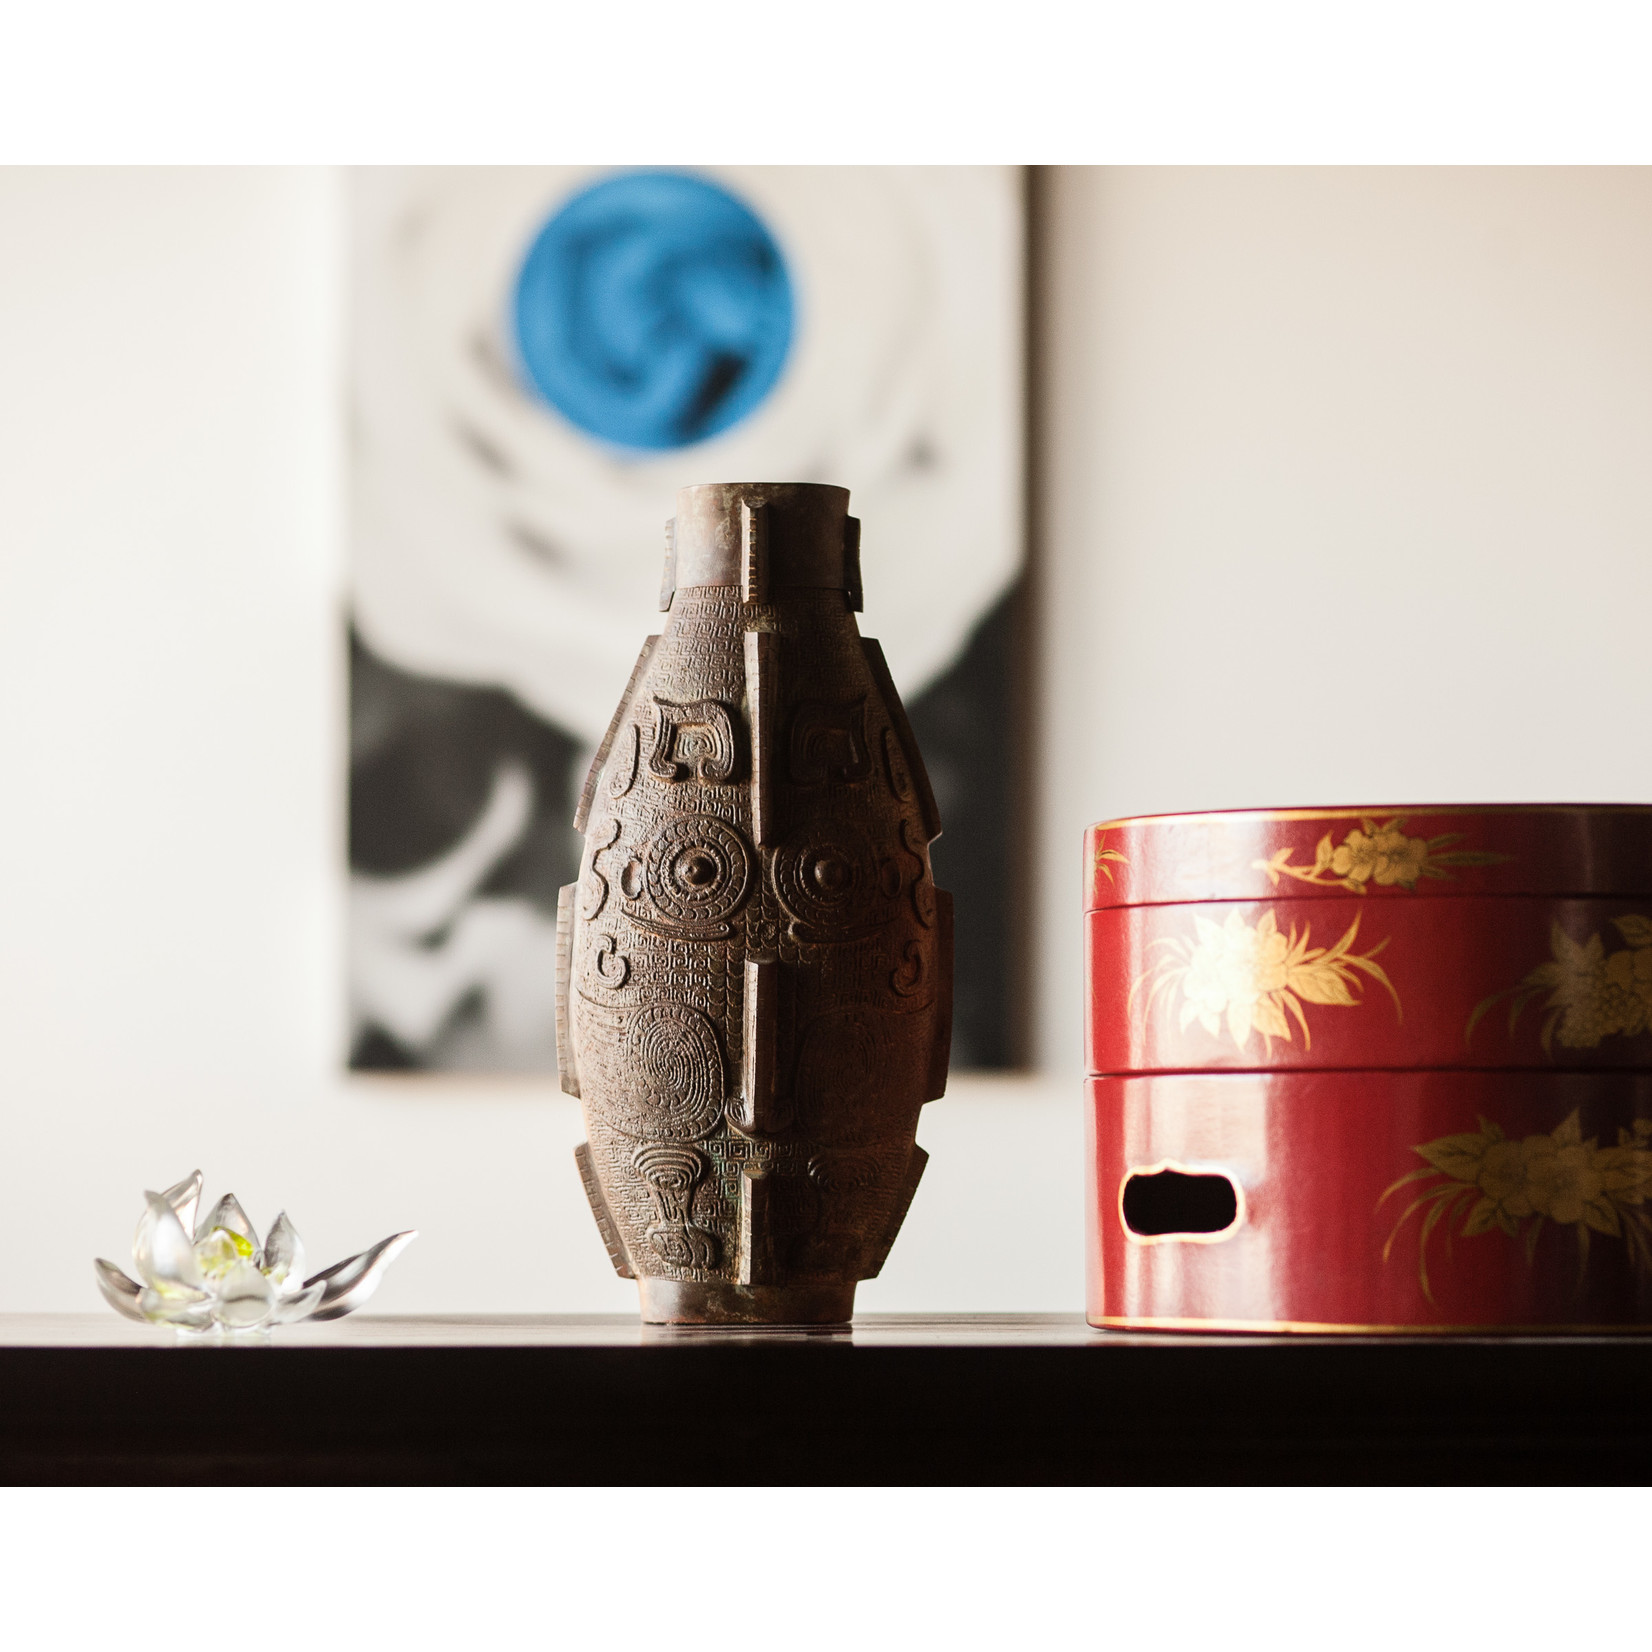 Lawrence & Scott Owl vase